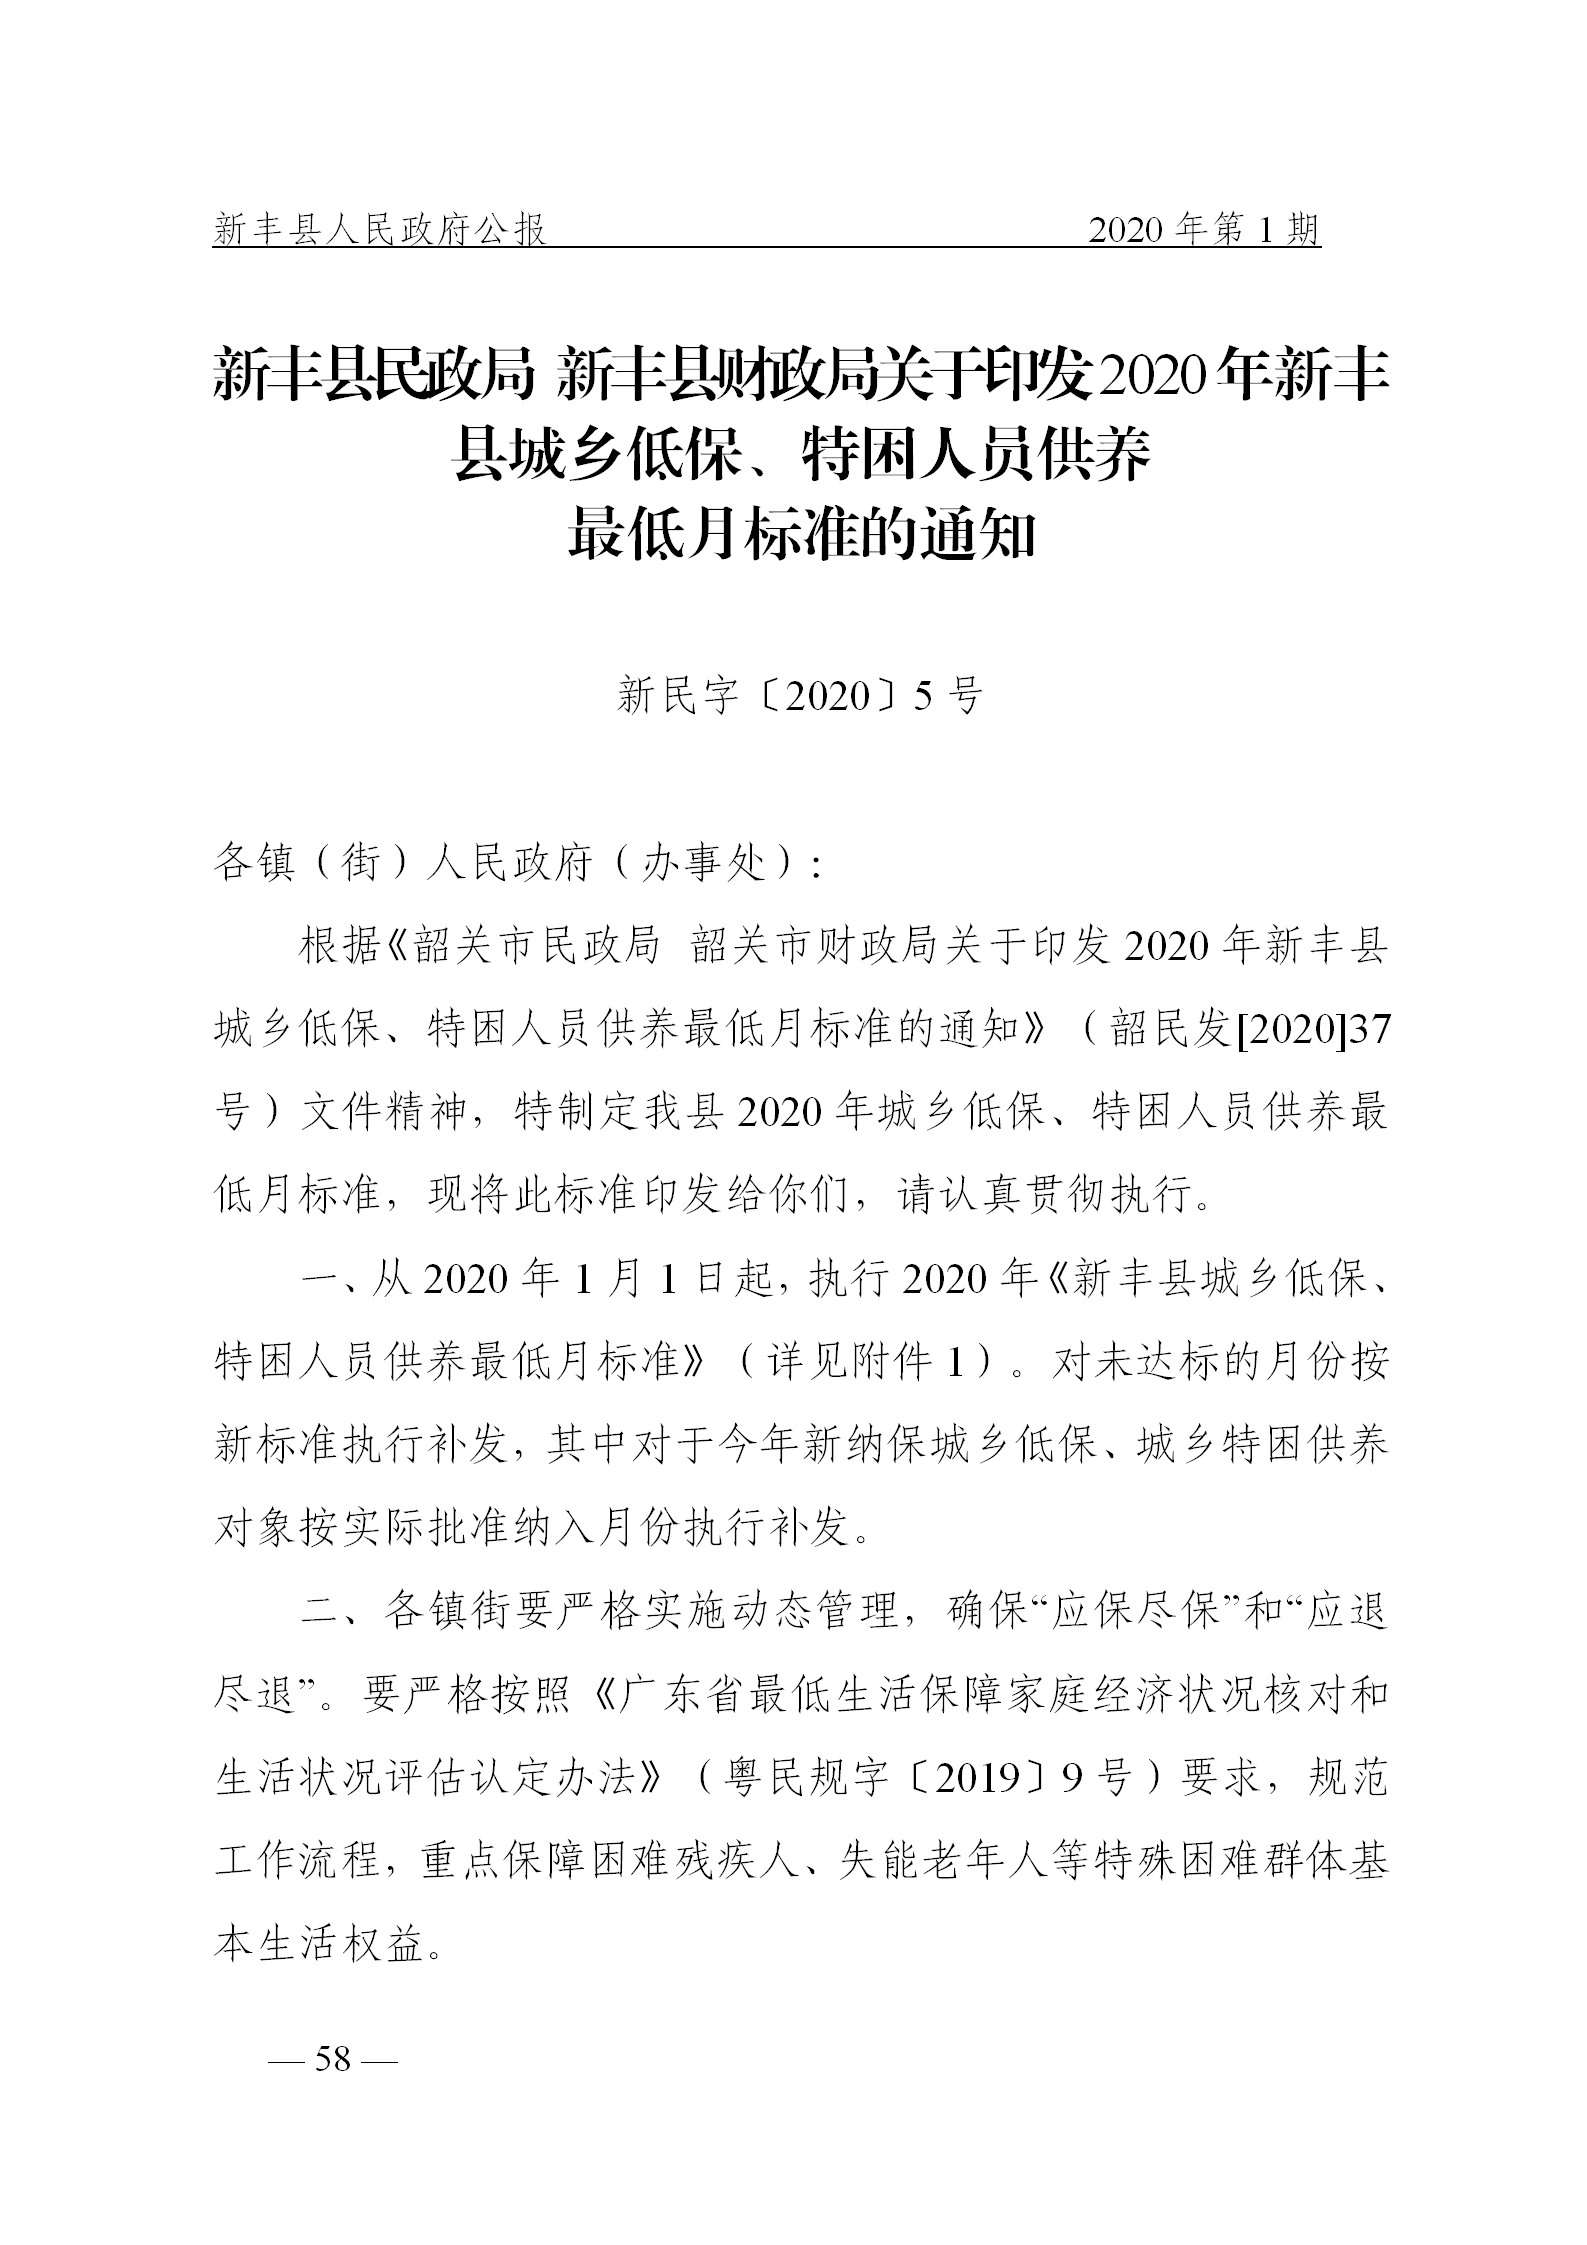 《新丰县人民政府公报》2020年第1期(1)_58.png